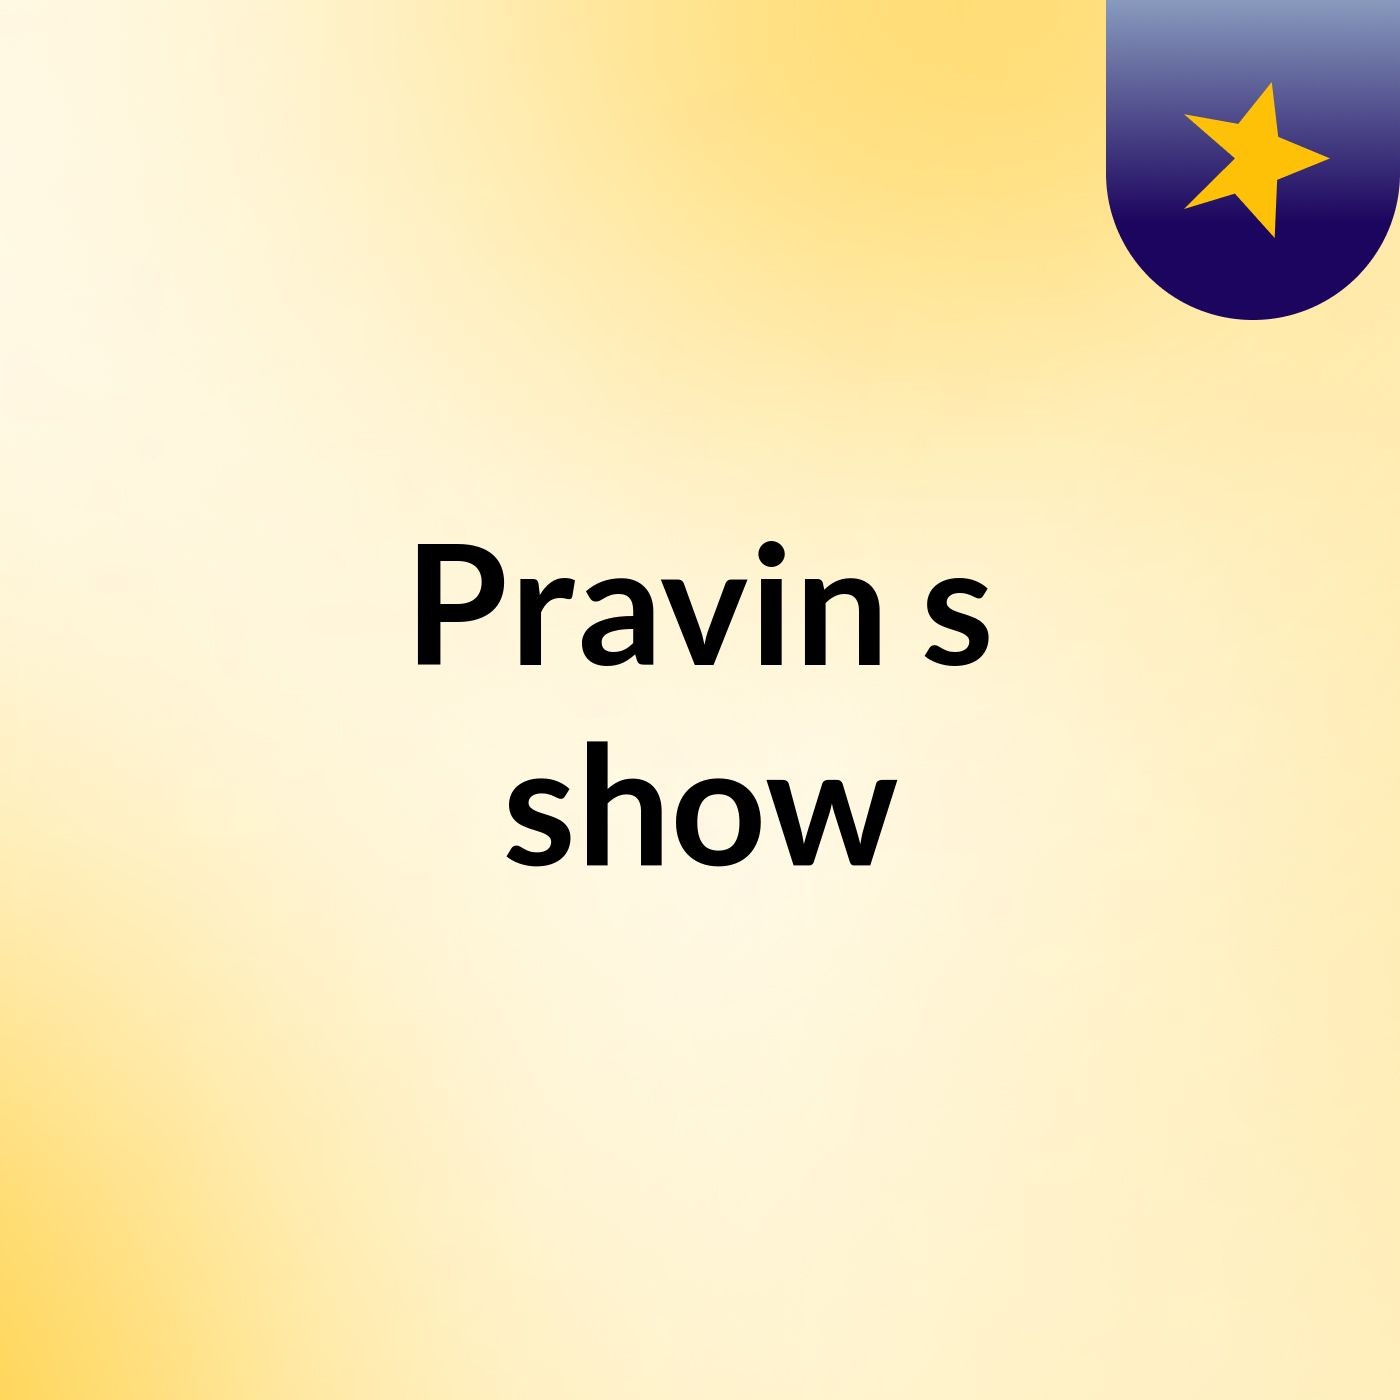 Pravin's show